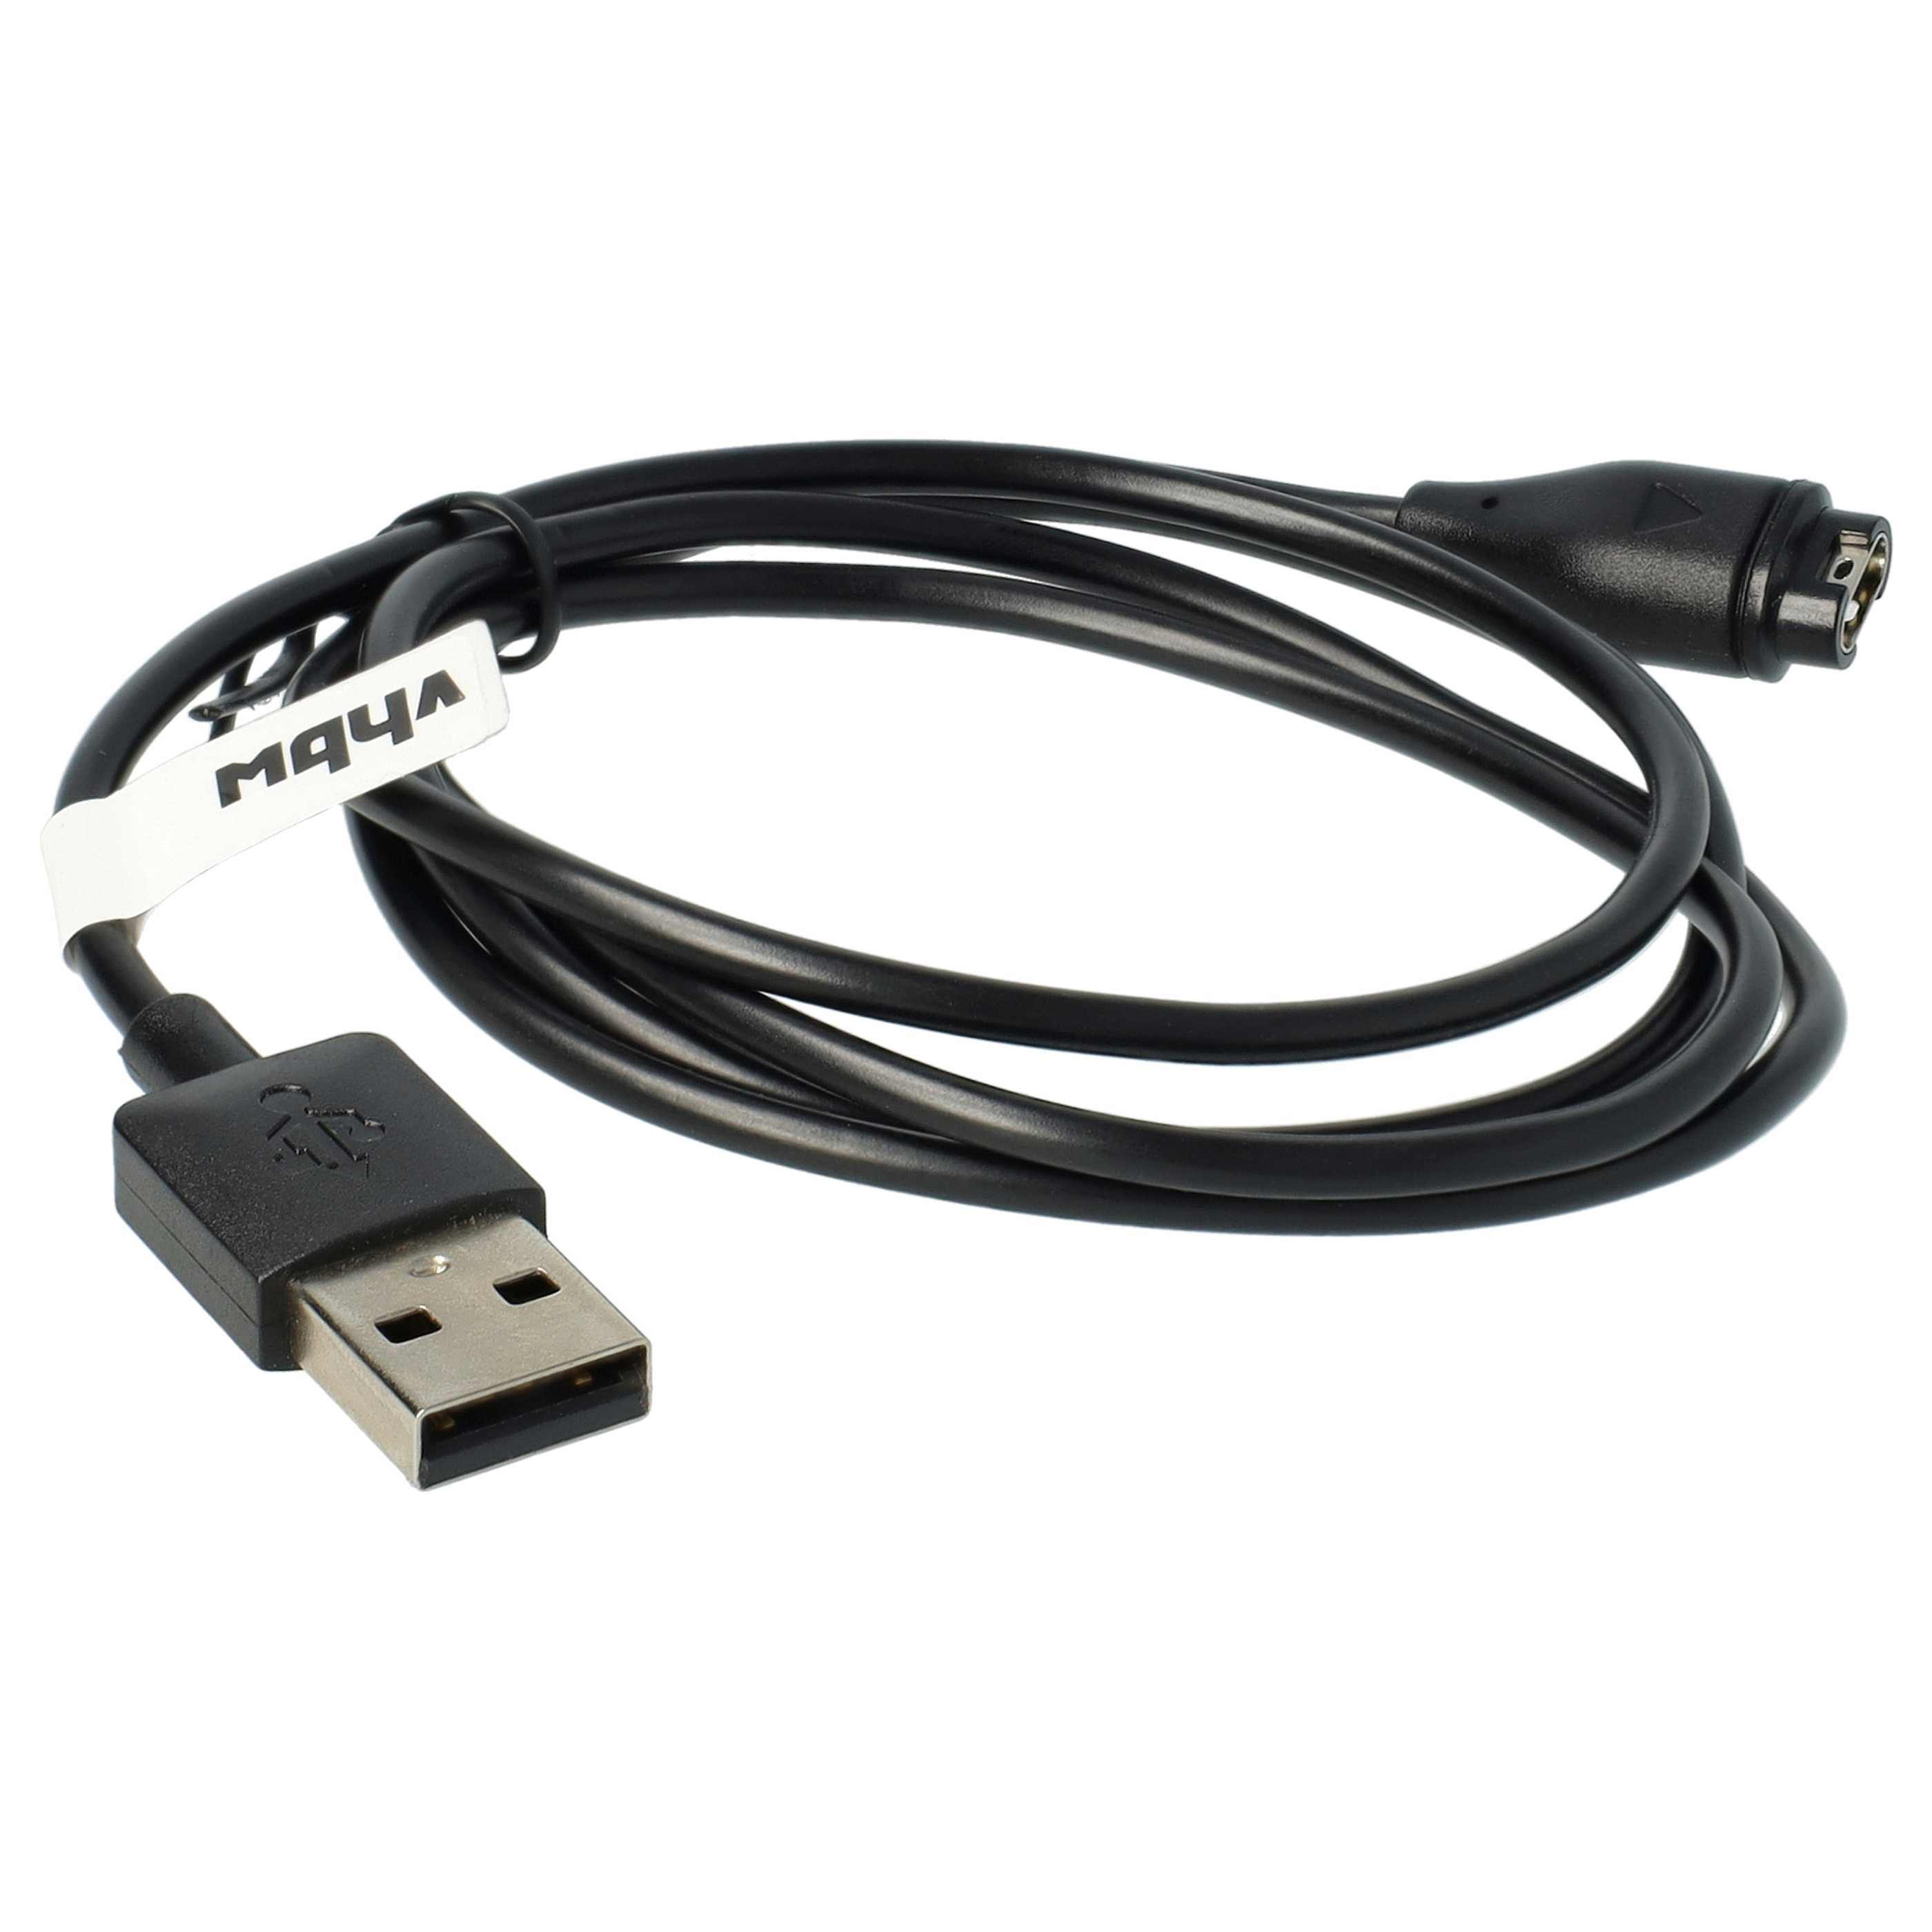 Cable de carga USB reemplaza Garmin 8013048 para smartwatch Garmin - negro 100 cm